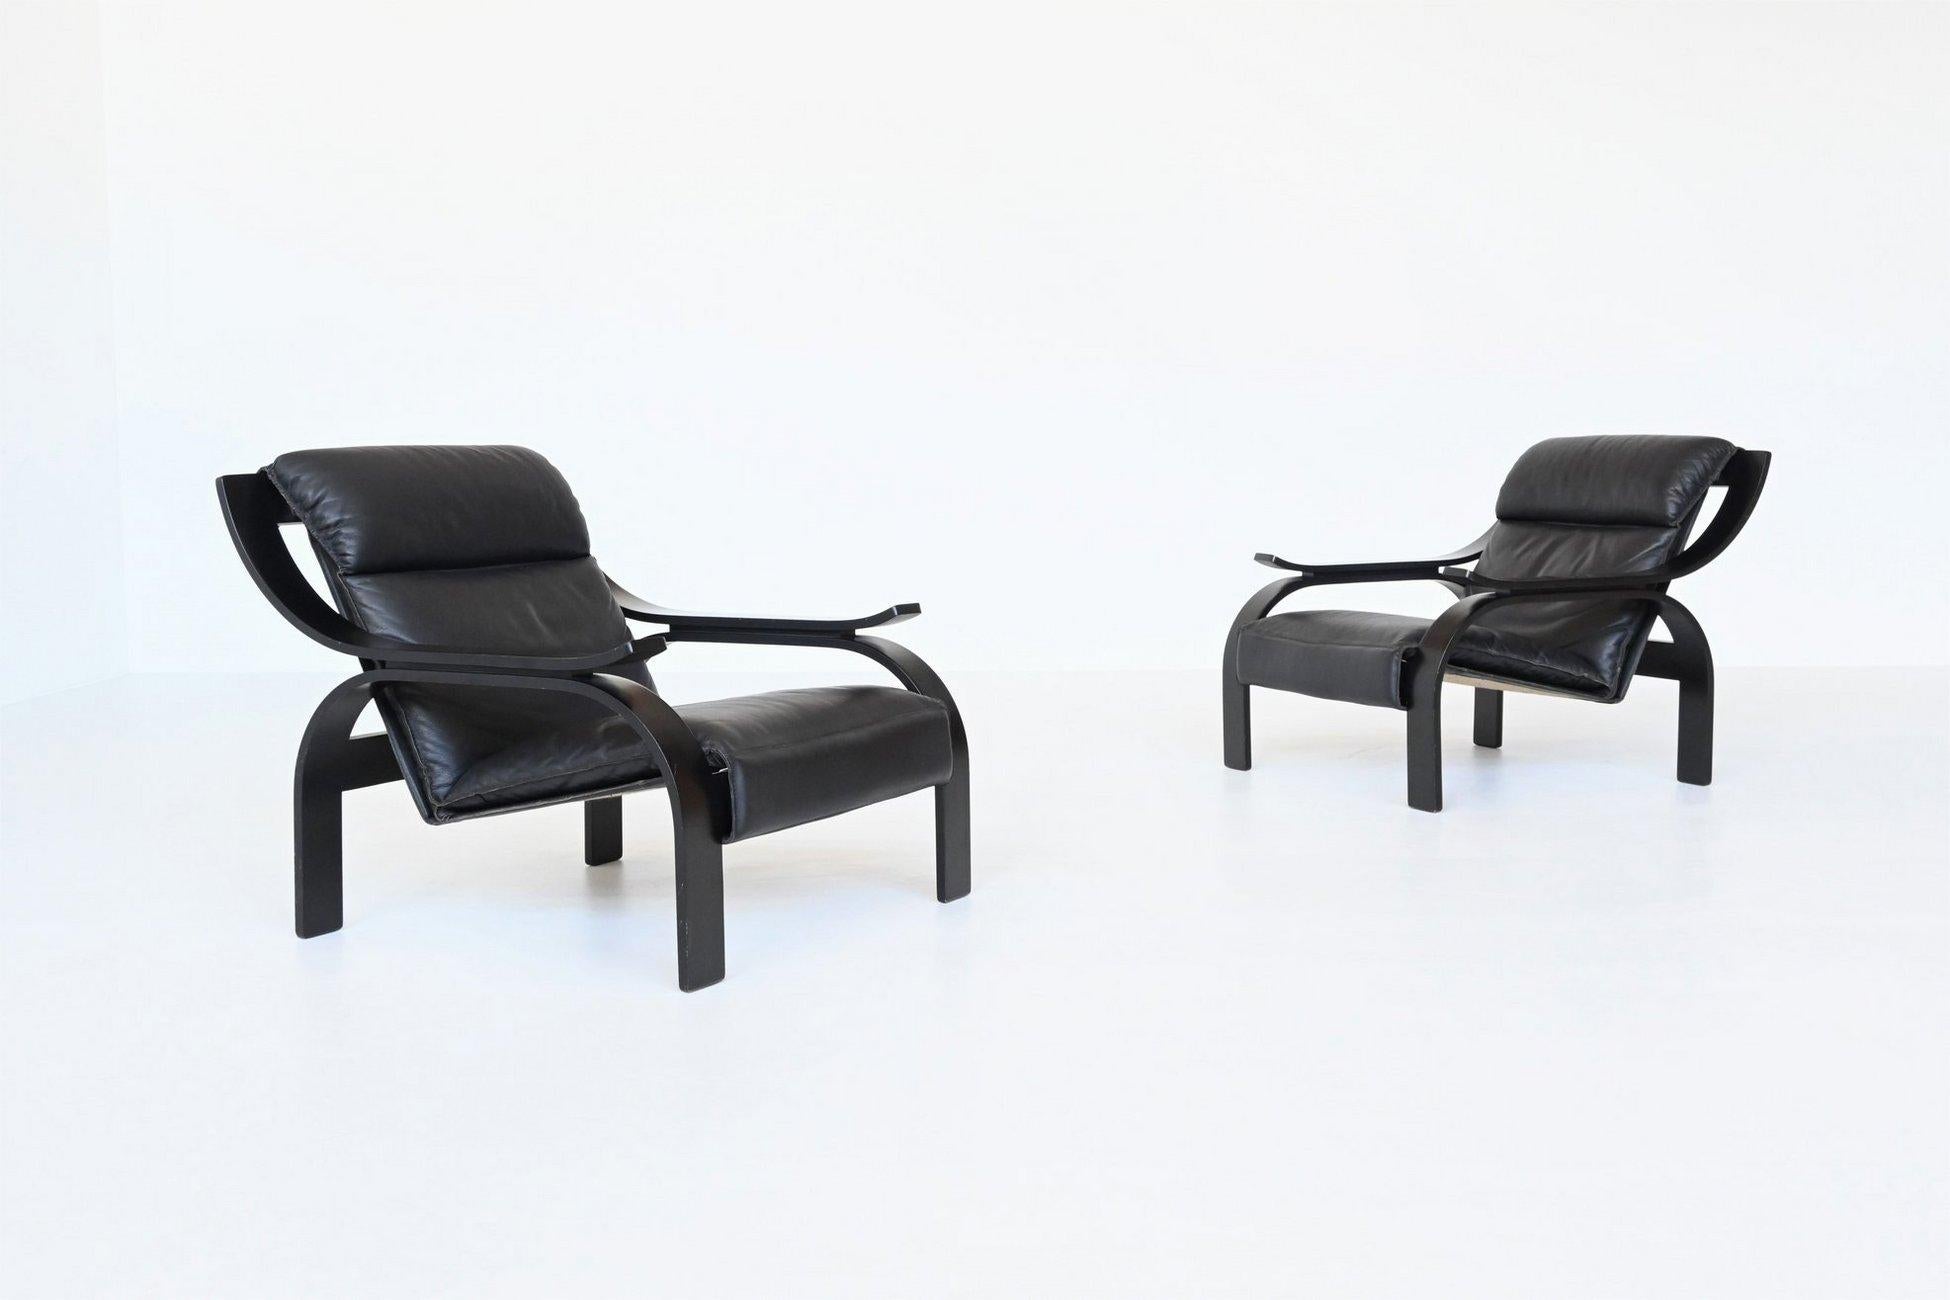 Ein Paar Woodline Lounge Chairs, entworfen von Marco Zanuso für Arflex, Italien 1964. Diese fantastisch geformten Stühle haben einen schwarz lackierten Sperrholzrahmen und die Sitzfläche ist mit hochwertigem schwarzem Leder bezogen. Die Konstruktion